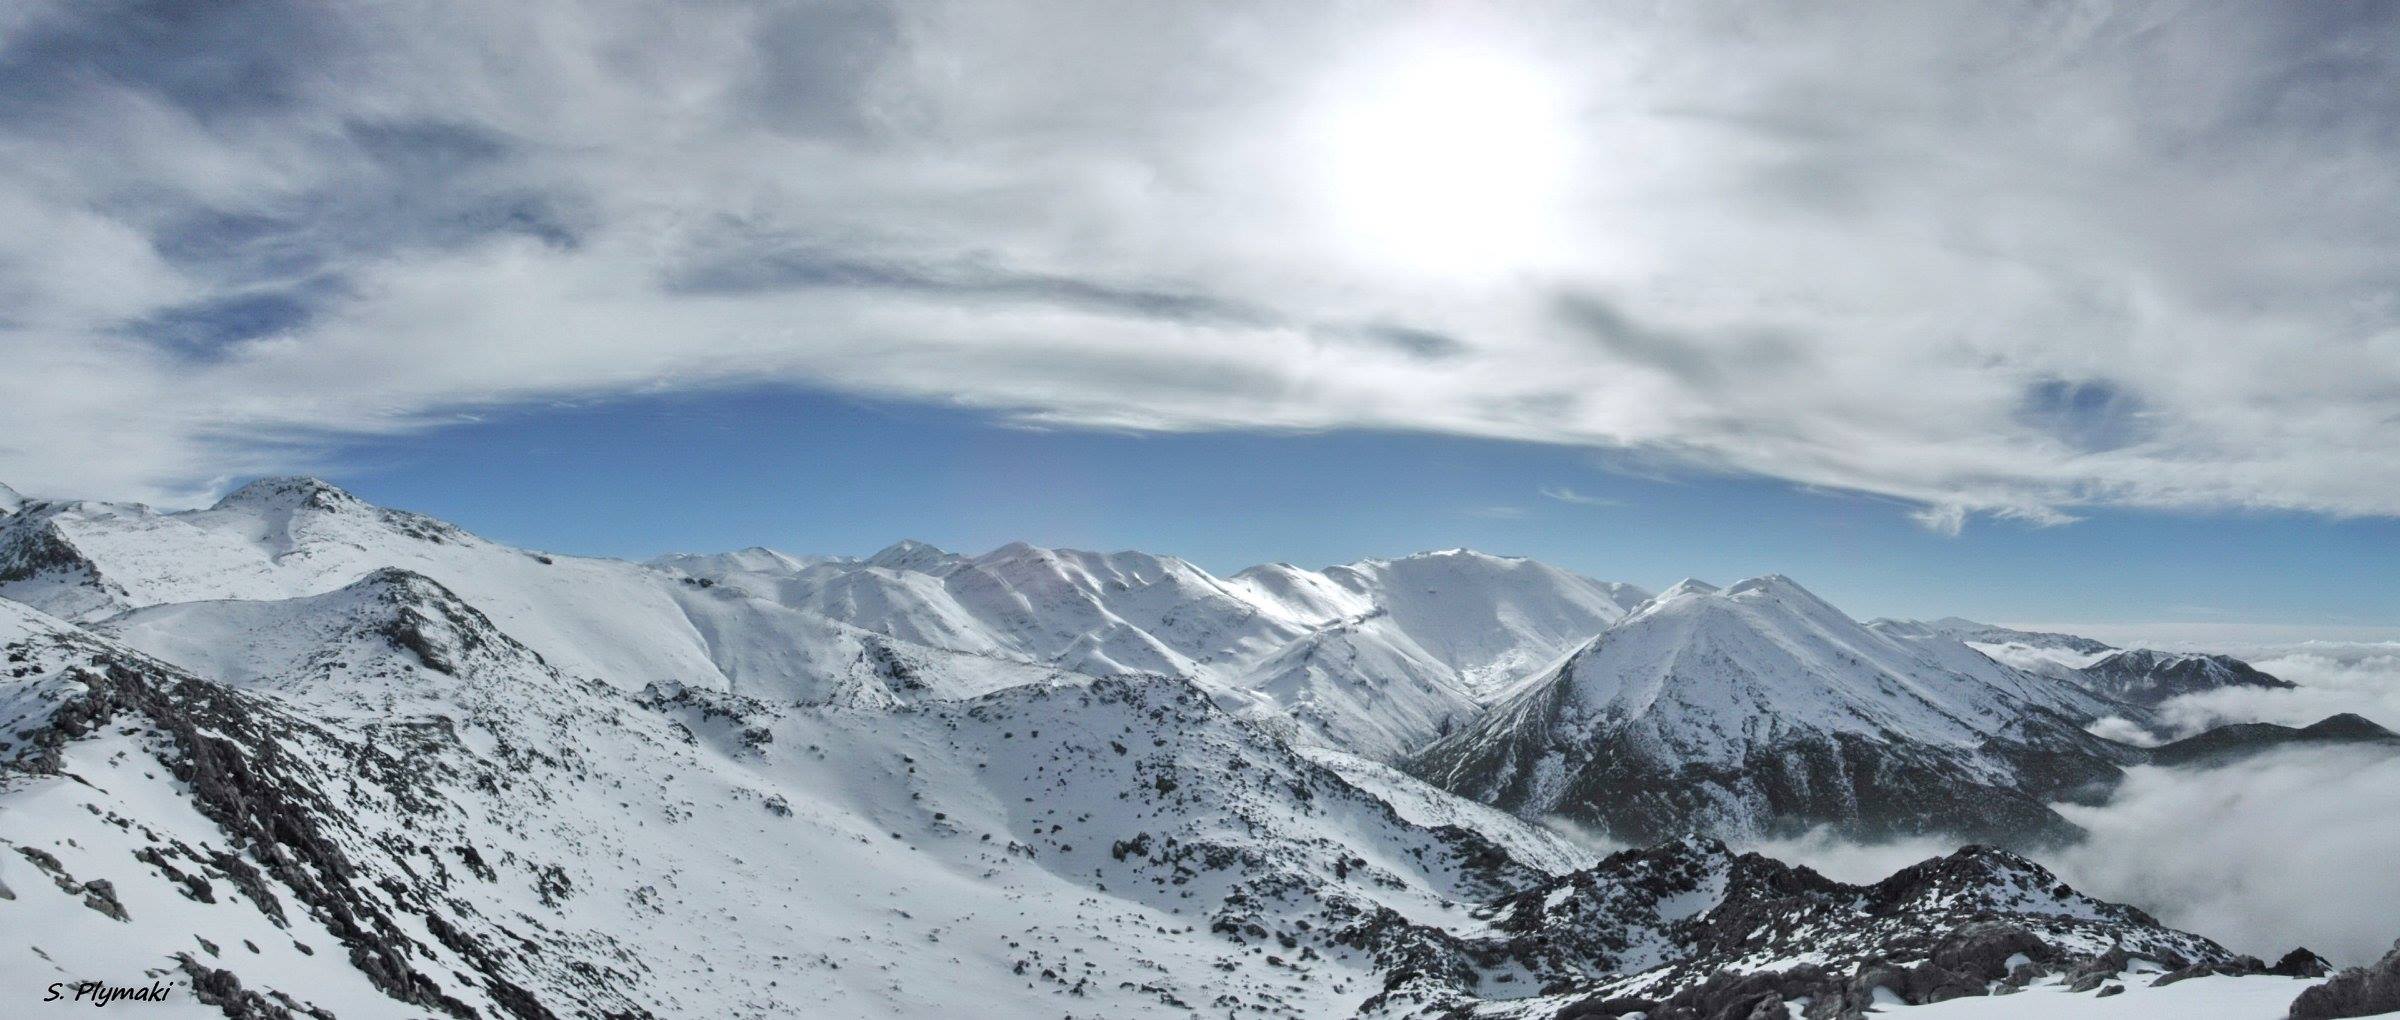 Ο Ορειβατικός Σύλλογος Χανίων πάει στην κορυφή Γκίγκιλος